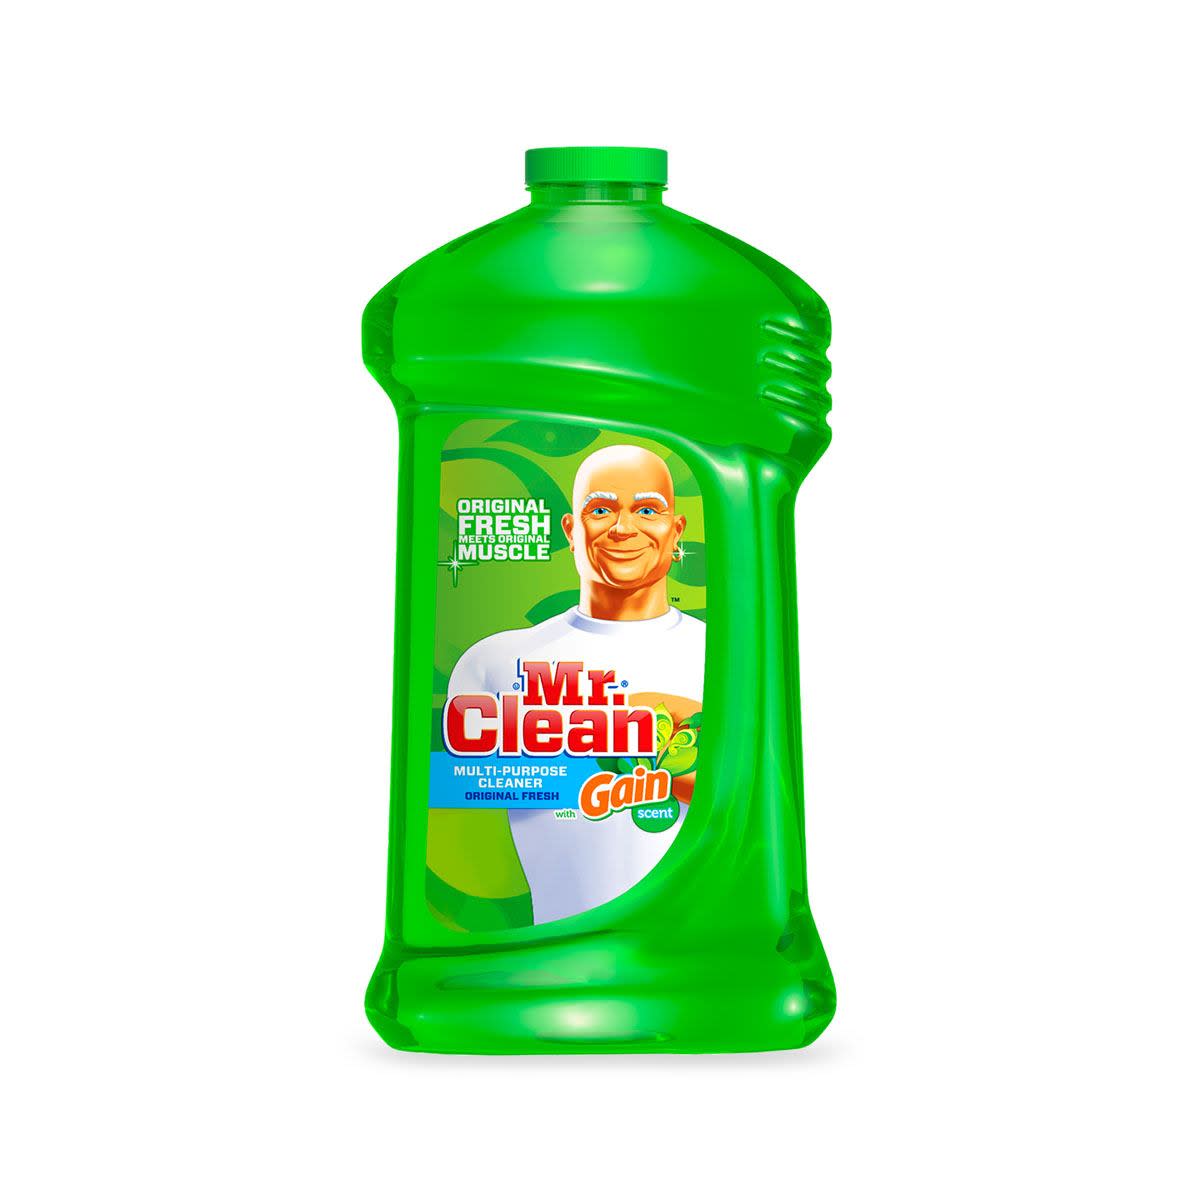 Mr. Clean Multi-Surface Liquid Cleaner | Gain Original